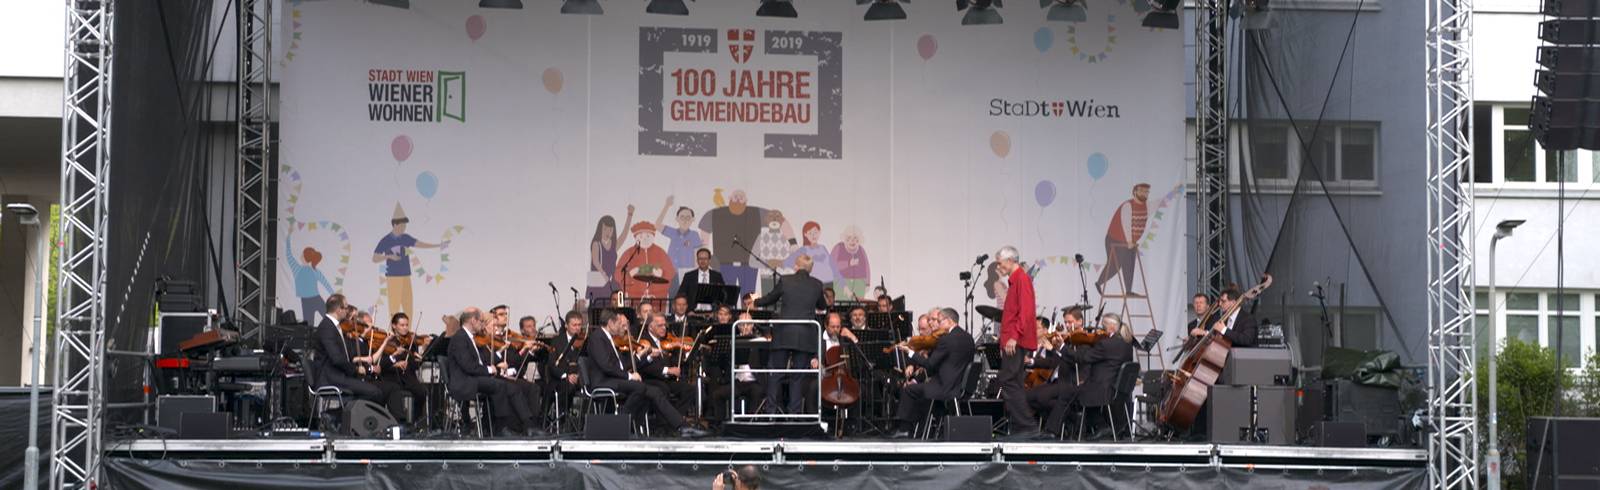 Wiener Symphoniker spielen im Gemeindebau